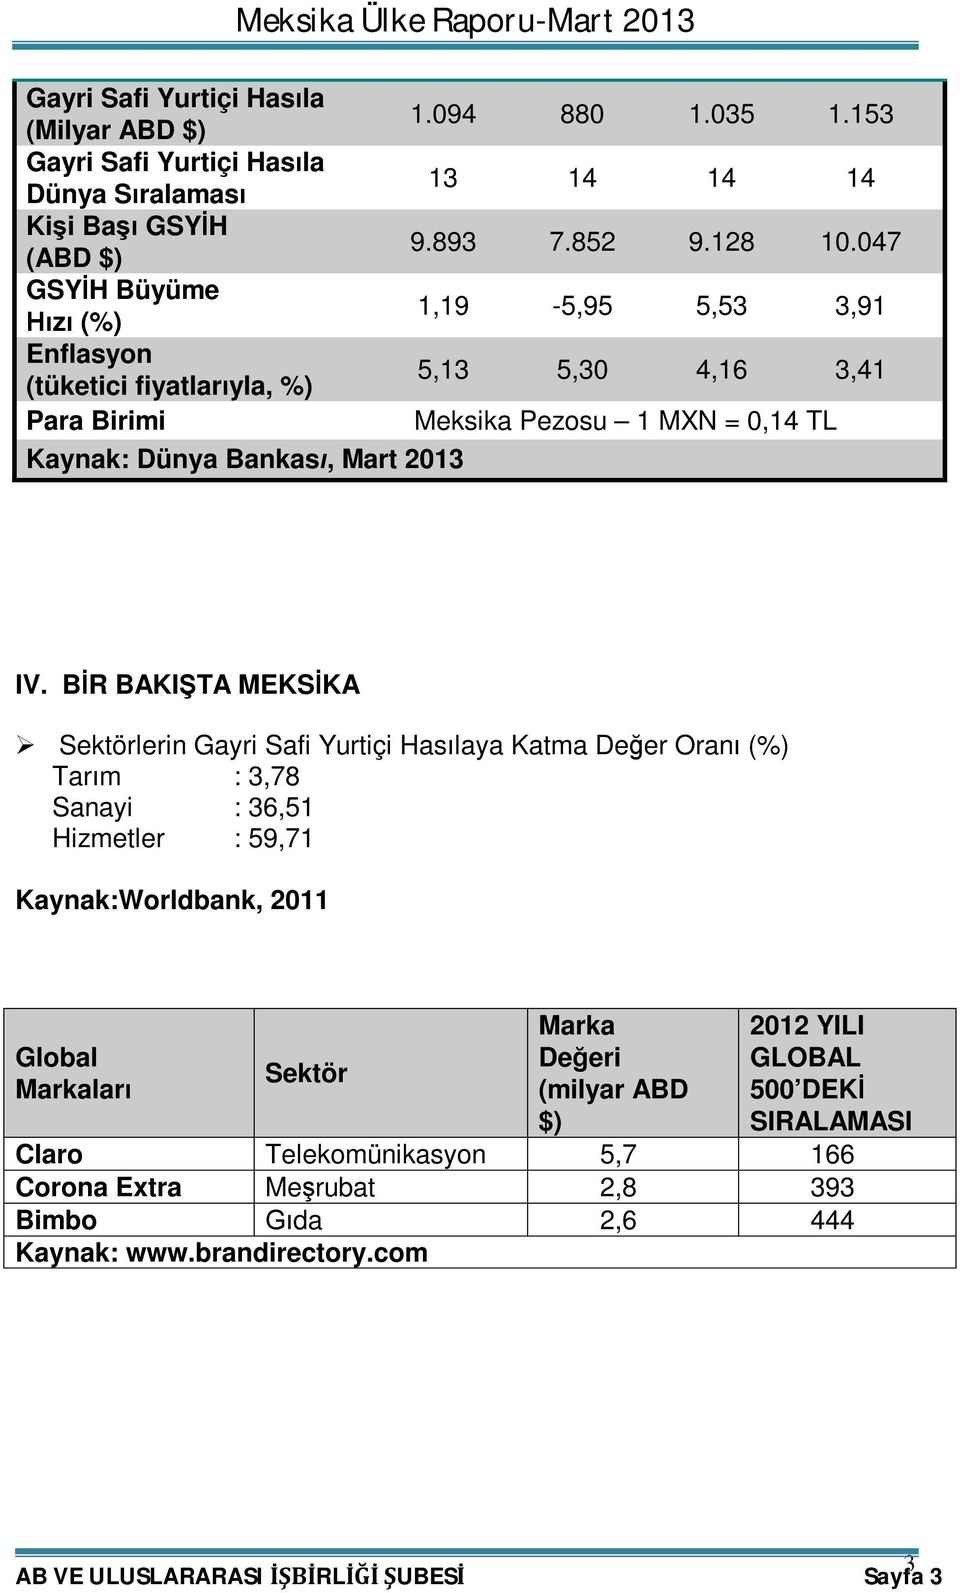 BİR BAKIŞTA MEKSİKA Sektörlerin Gayri Safi Yurtiçi Hasılaya Katma Değer Oranı (%) Tarım : 3,78 Sanayi : 36,51 Hizmetler : 59,71 Kaynak:Worldbank, 2011 Global Markaları Sektör Marka